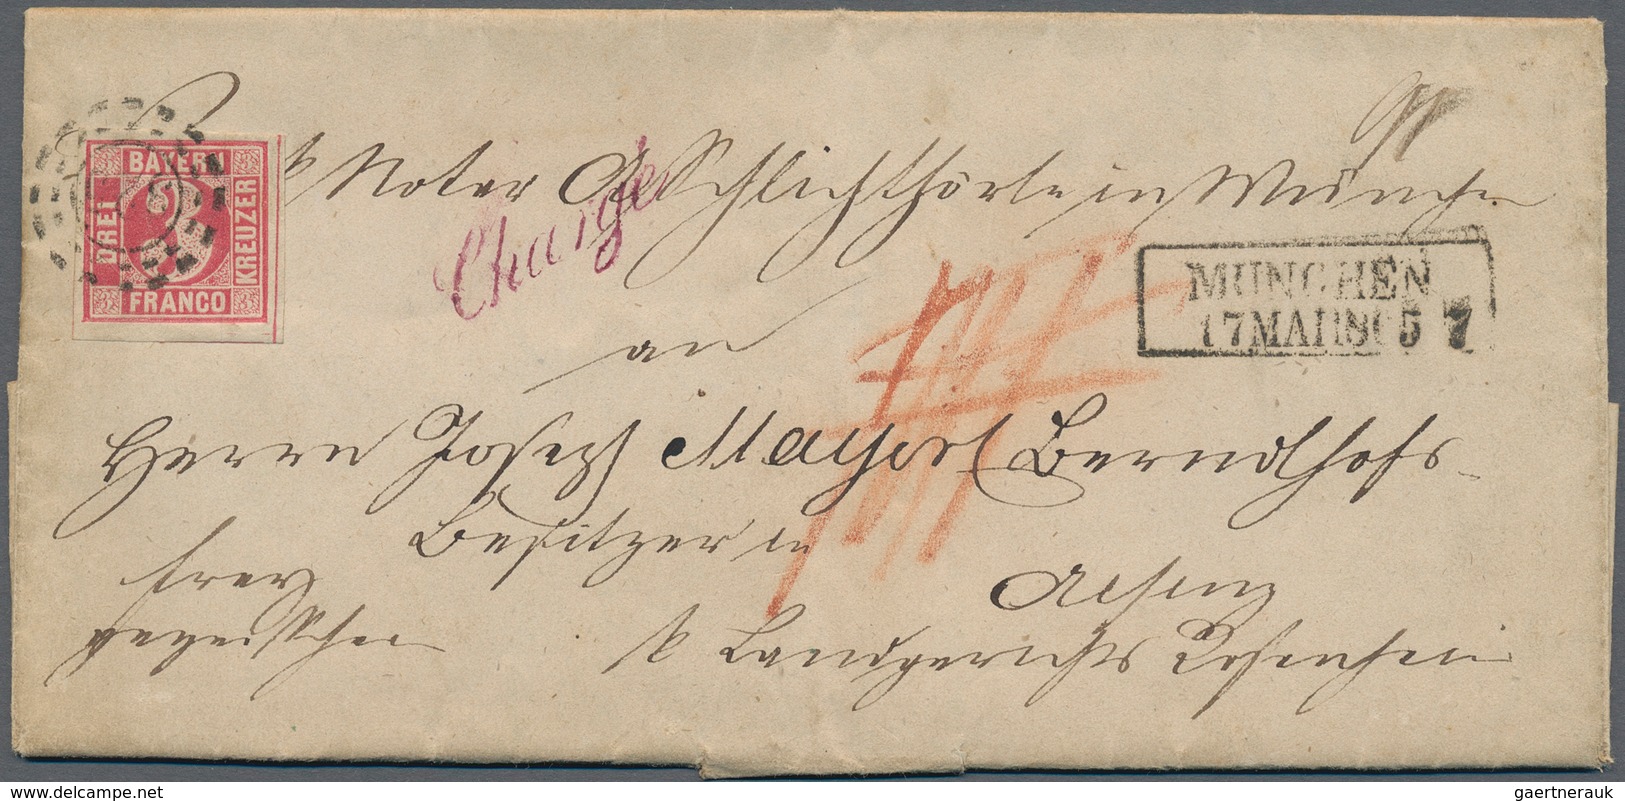 Bayern - Marken und Briefe: 1851/1902, Sammlung von 41 Briefen in guter Vielfalt, dabei 29 Belege mi